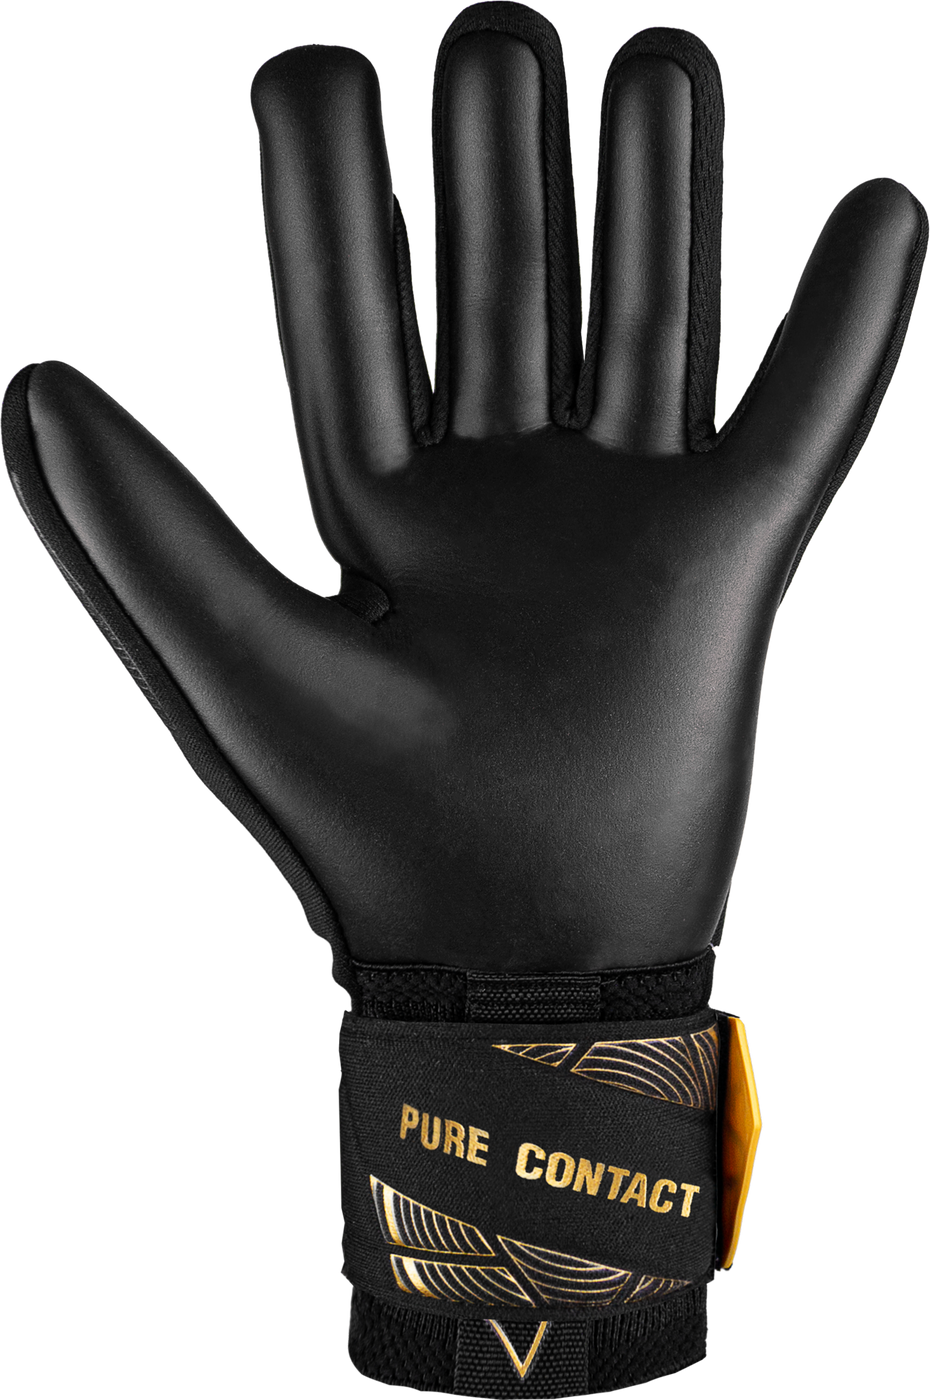 Вратарские перчатки Reusch Pure Contact Infinity купить